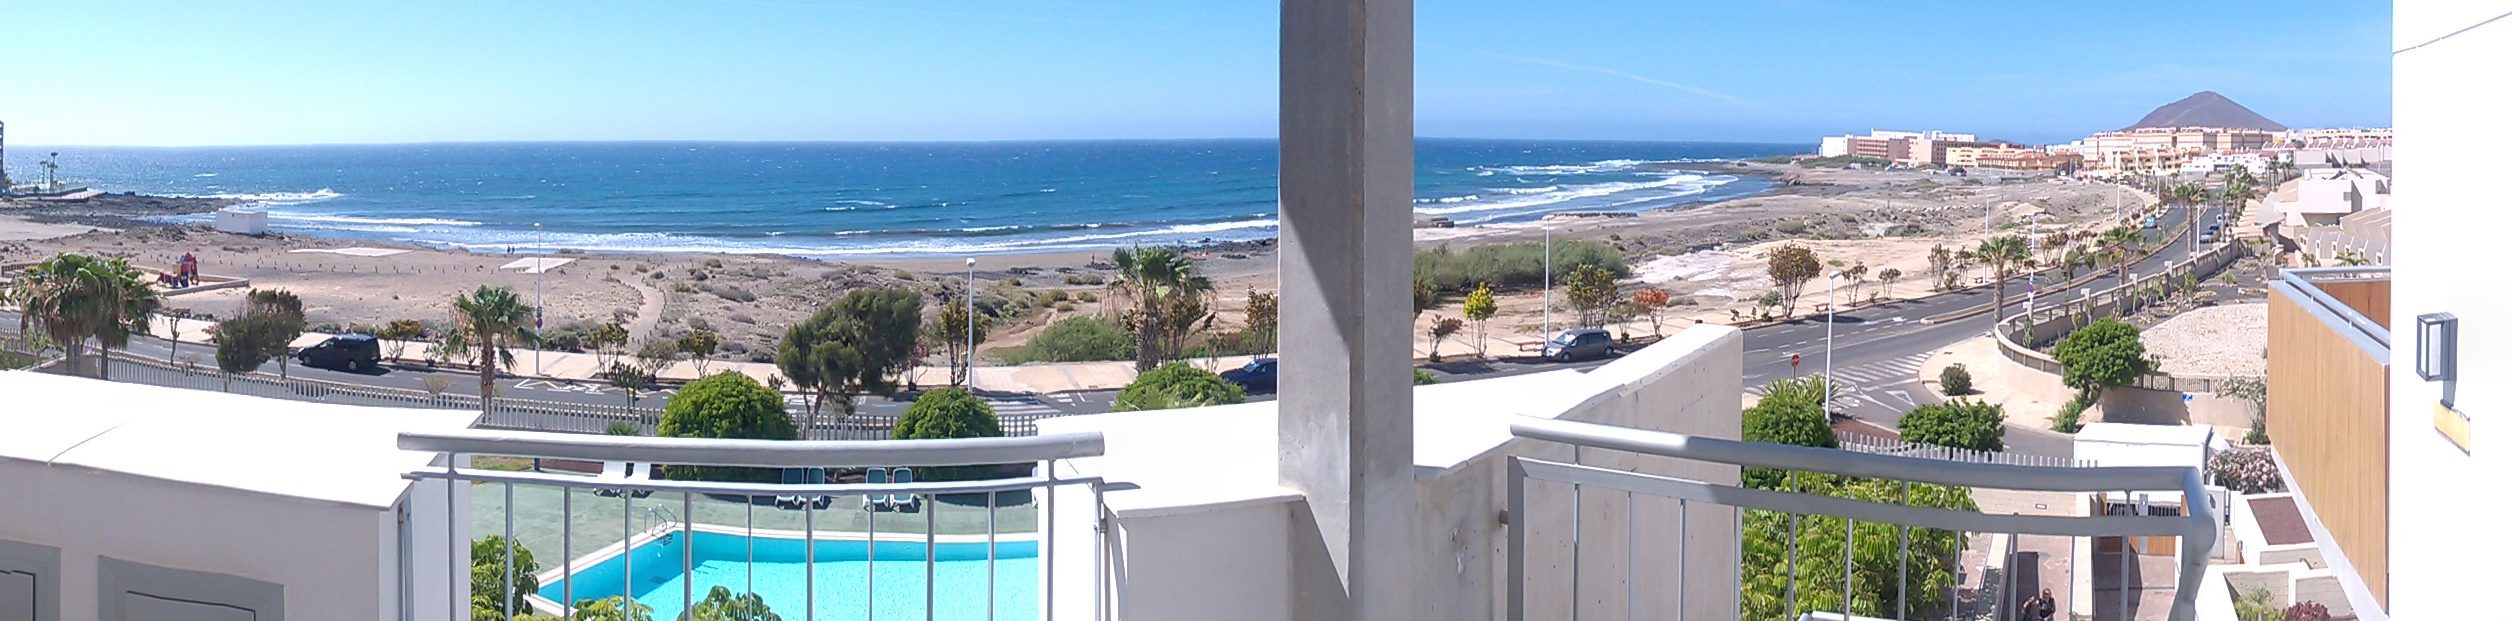 Duplex appartement in El Medano Tenerife te huur